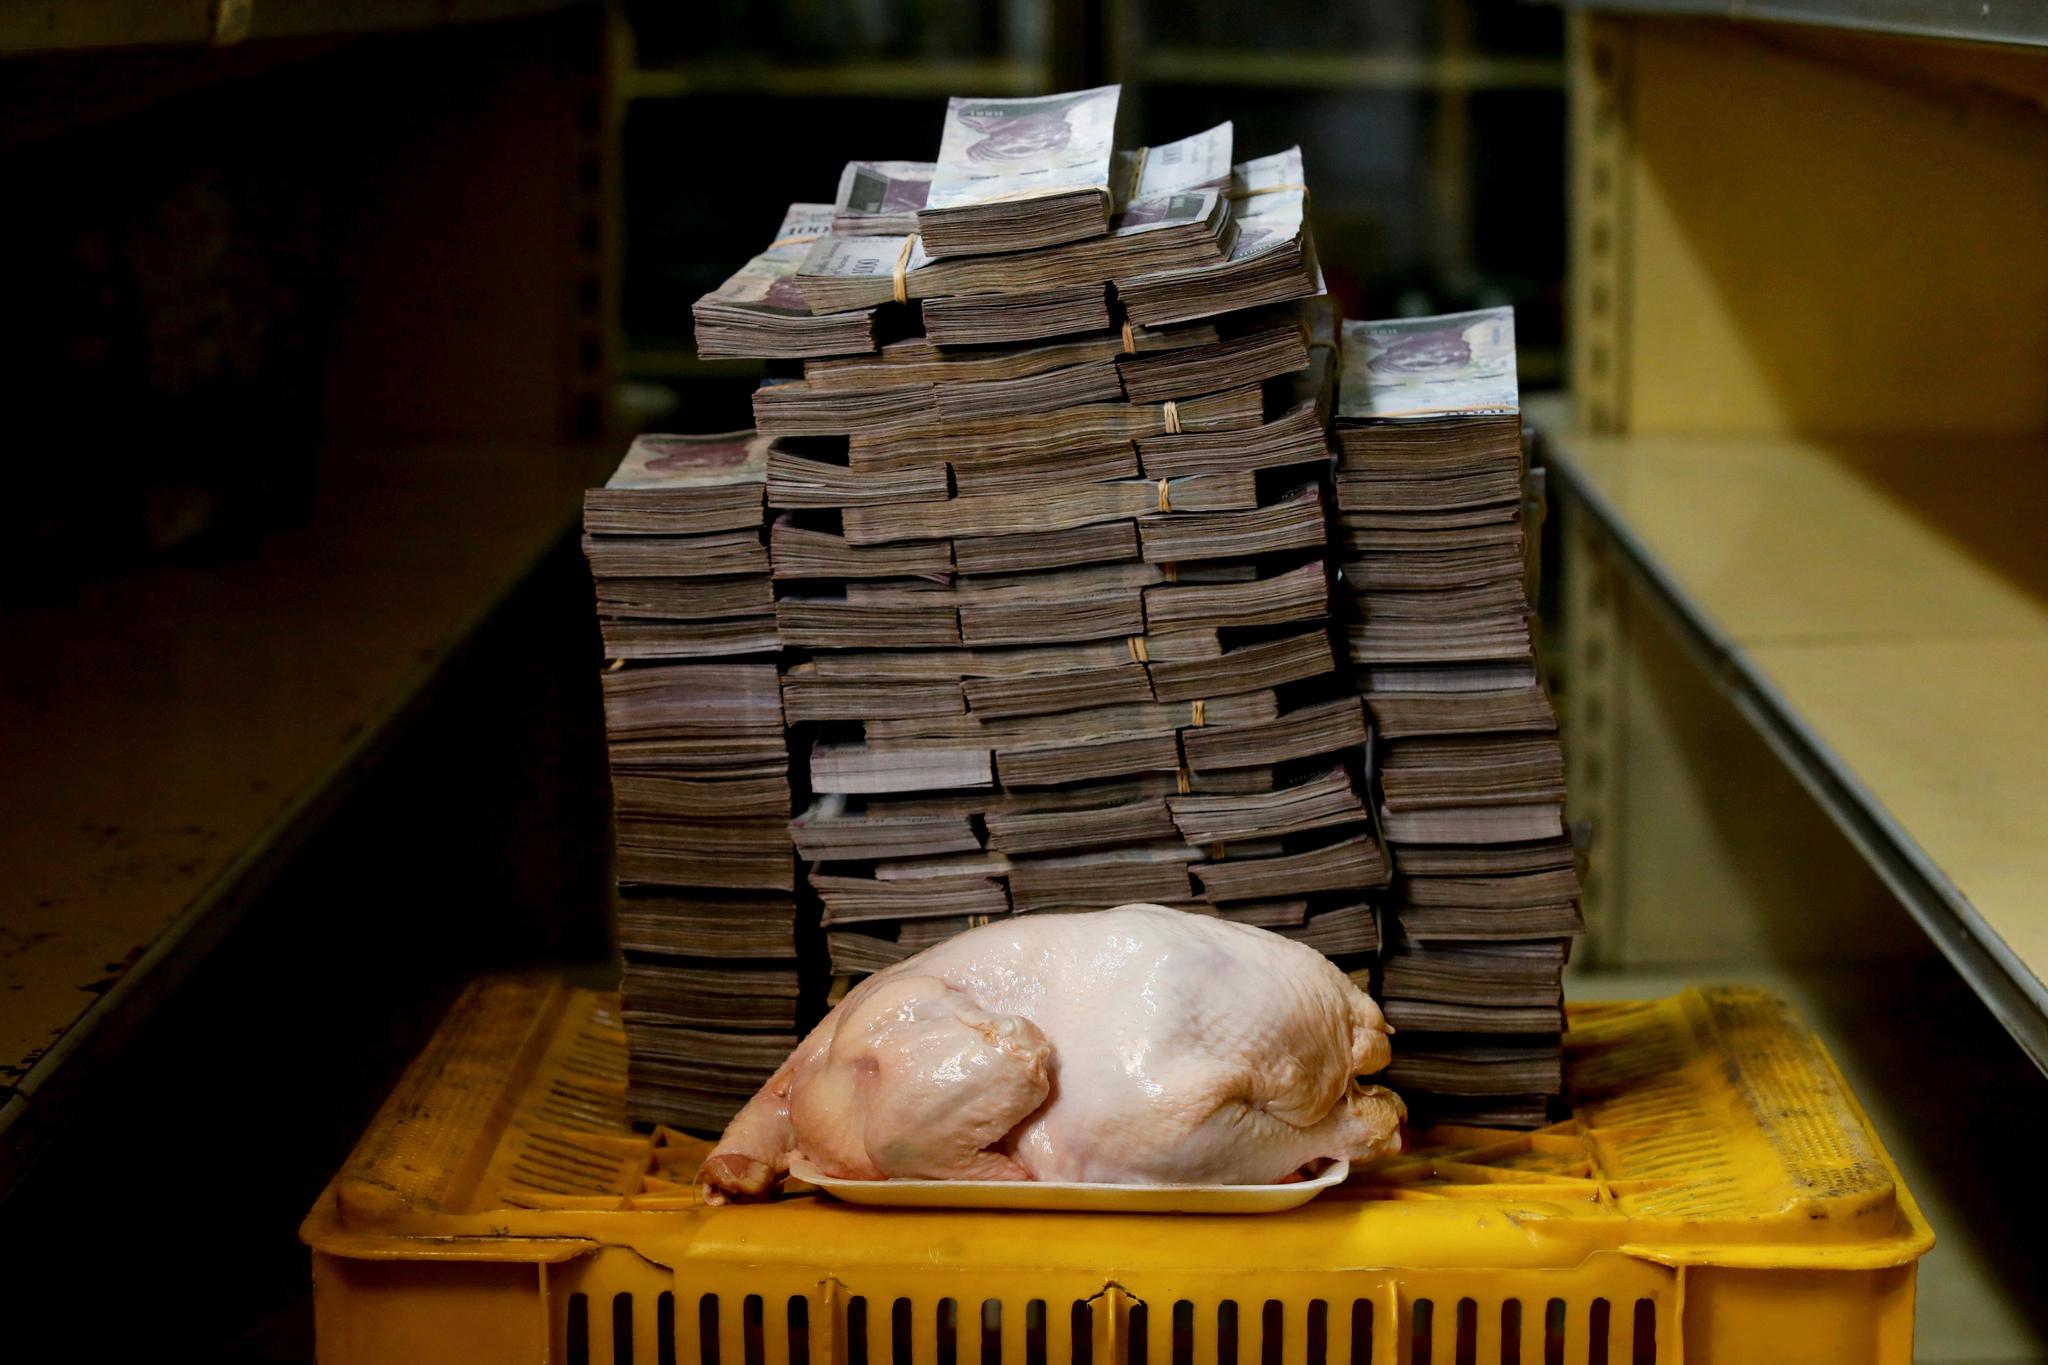  For 2,4 kilo kylling måtte man i juli ut med 14.600.000 bolivars. Hyperinflasjonen gjør det vanskelig å gjøre handel i Venezuela. Få minibanker har så mange sedler. 